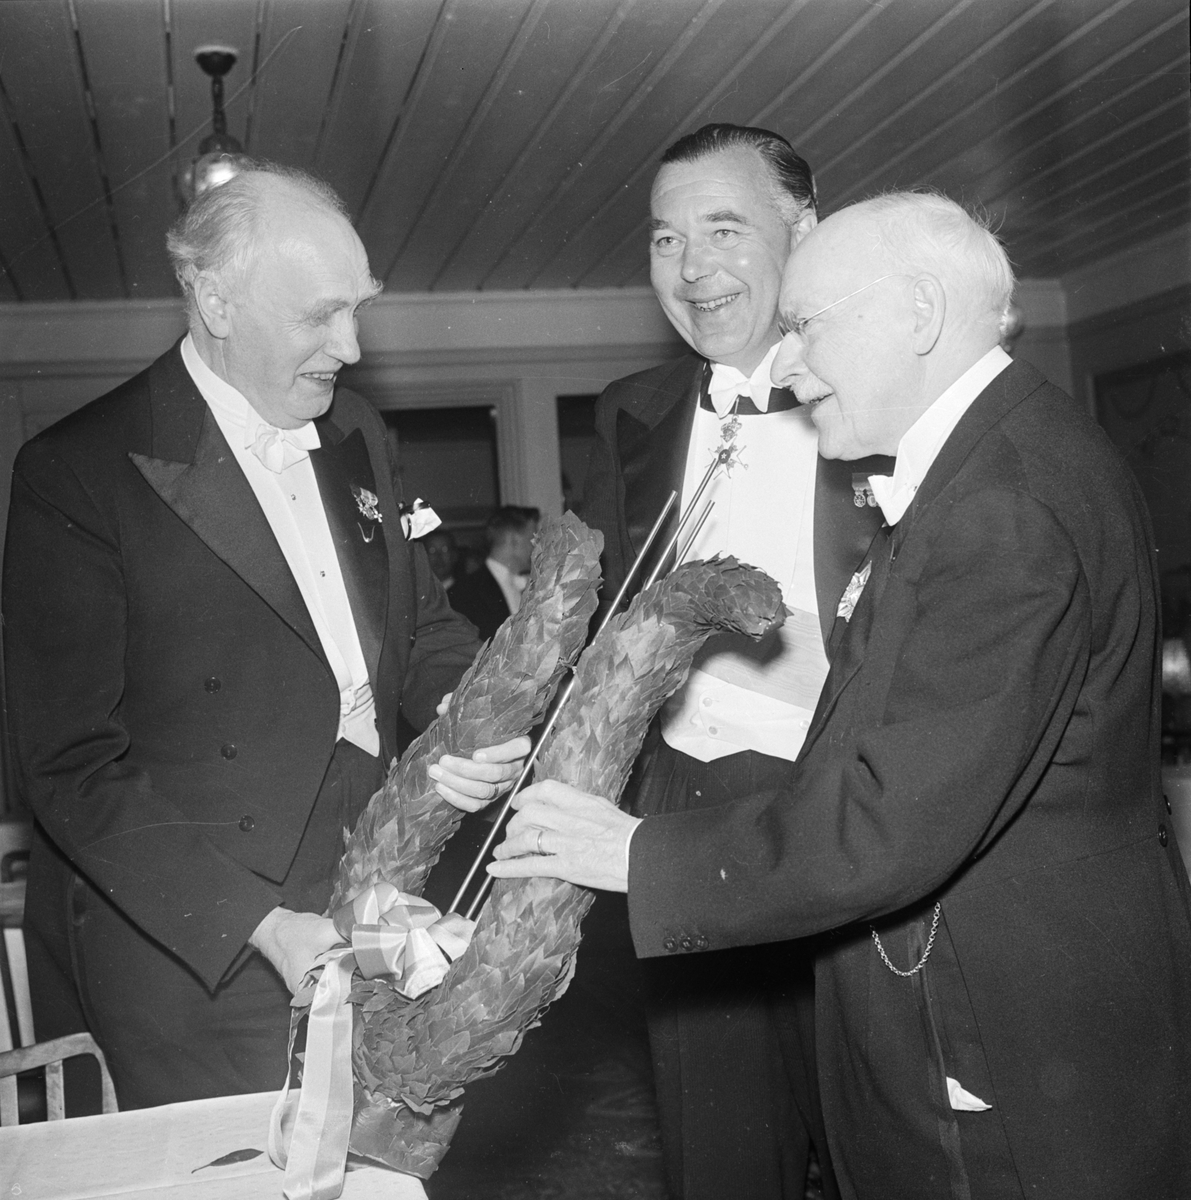 Prins Bertil och Stor-OD - Orphei Drängar - hyllade tonsättaren Hugo Alfvén inför hans 85-årsdag, Flustret, Uppsala 1957